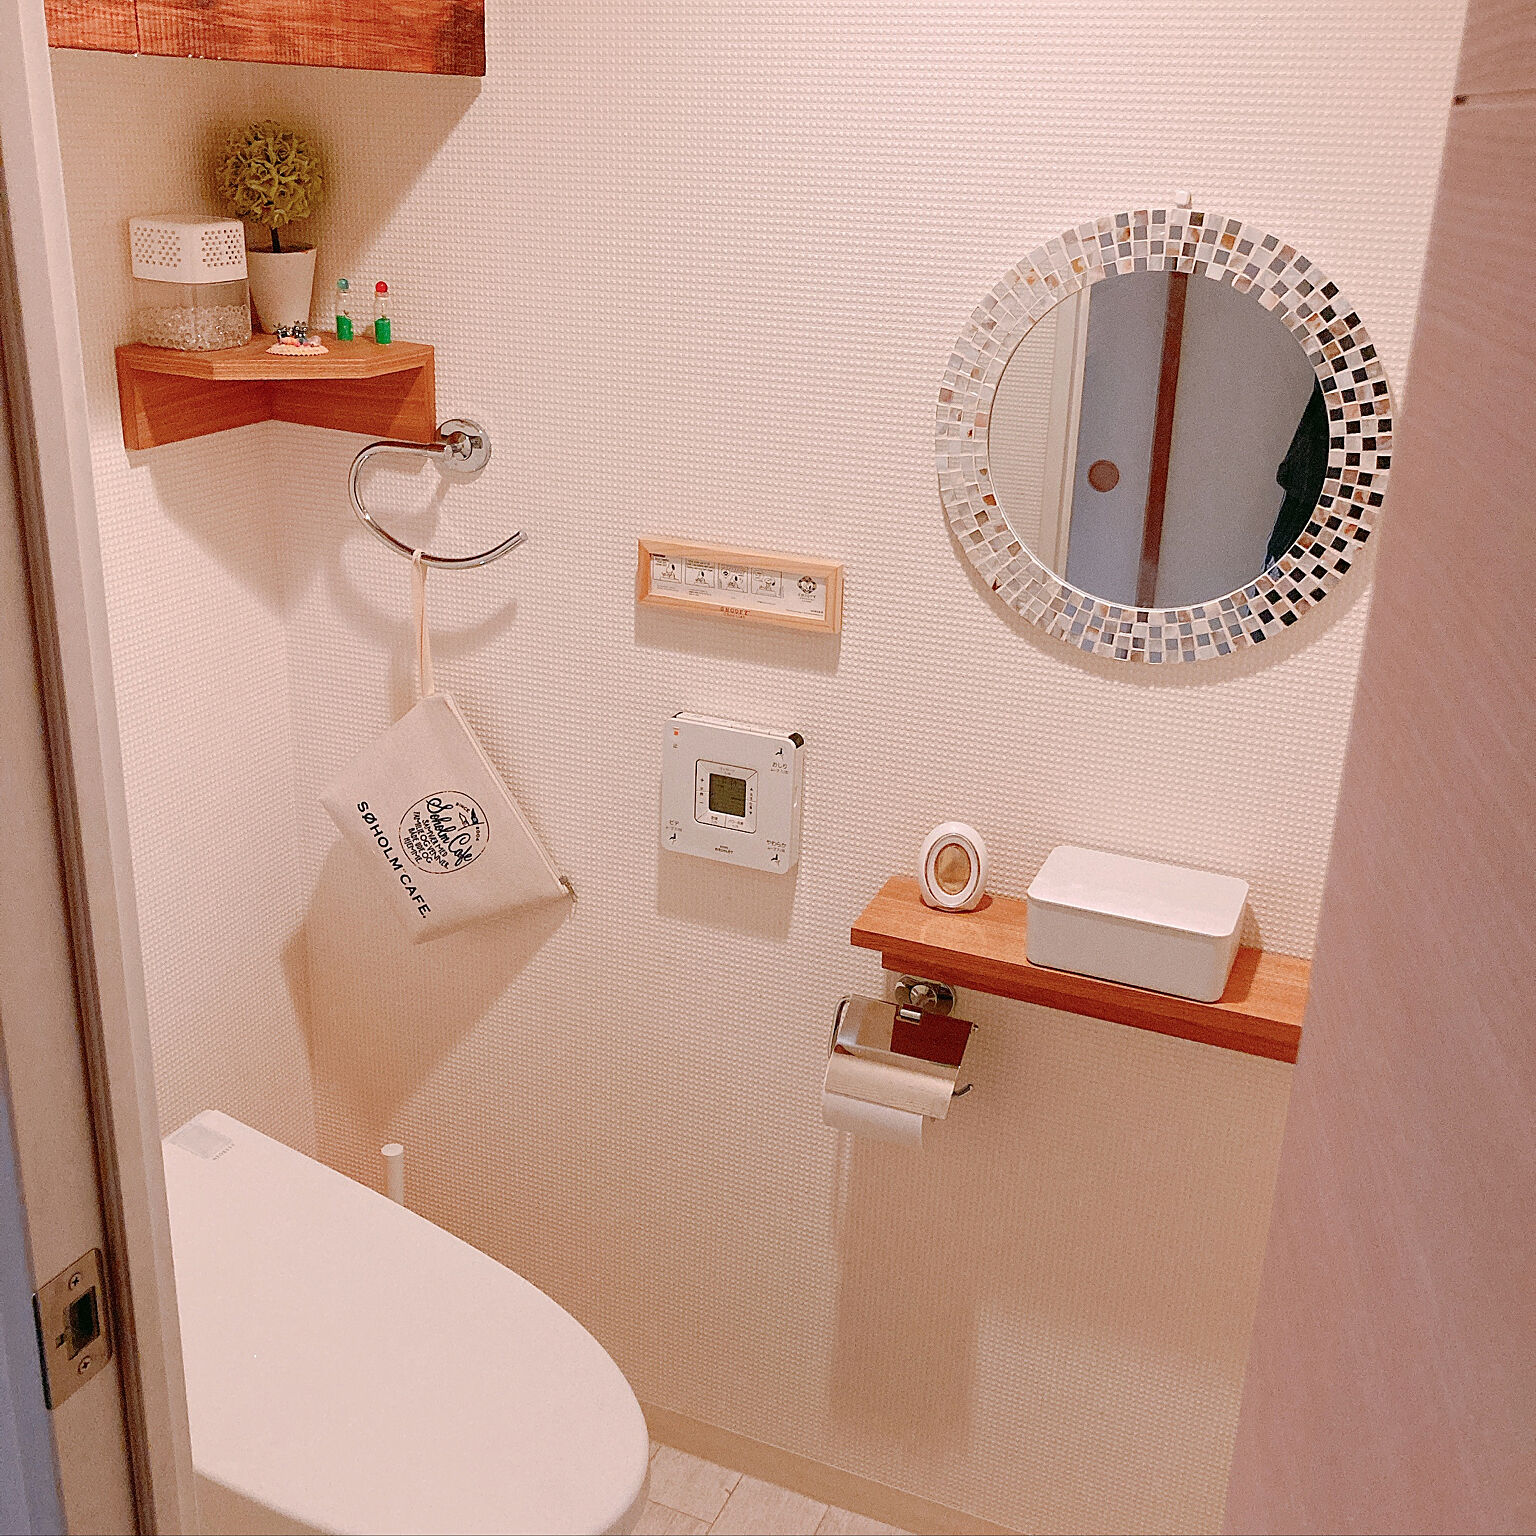 自由に選べて身だしなみチェックもできる トイレの鏡の実例10選 Roomclip Mag 暮らしとインテリアのwebマガジン